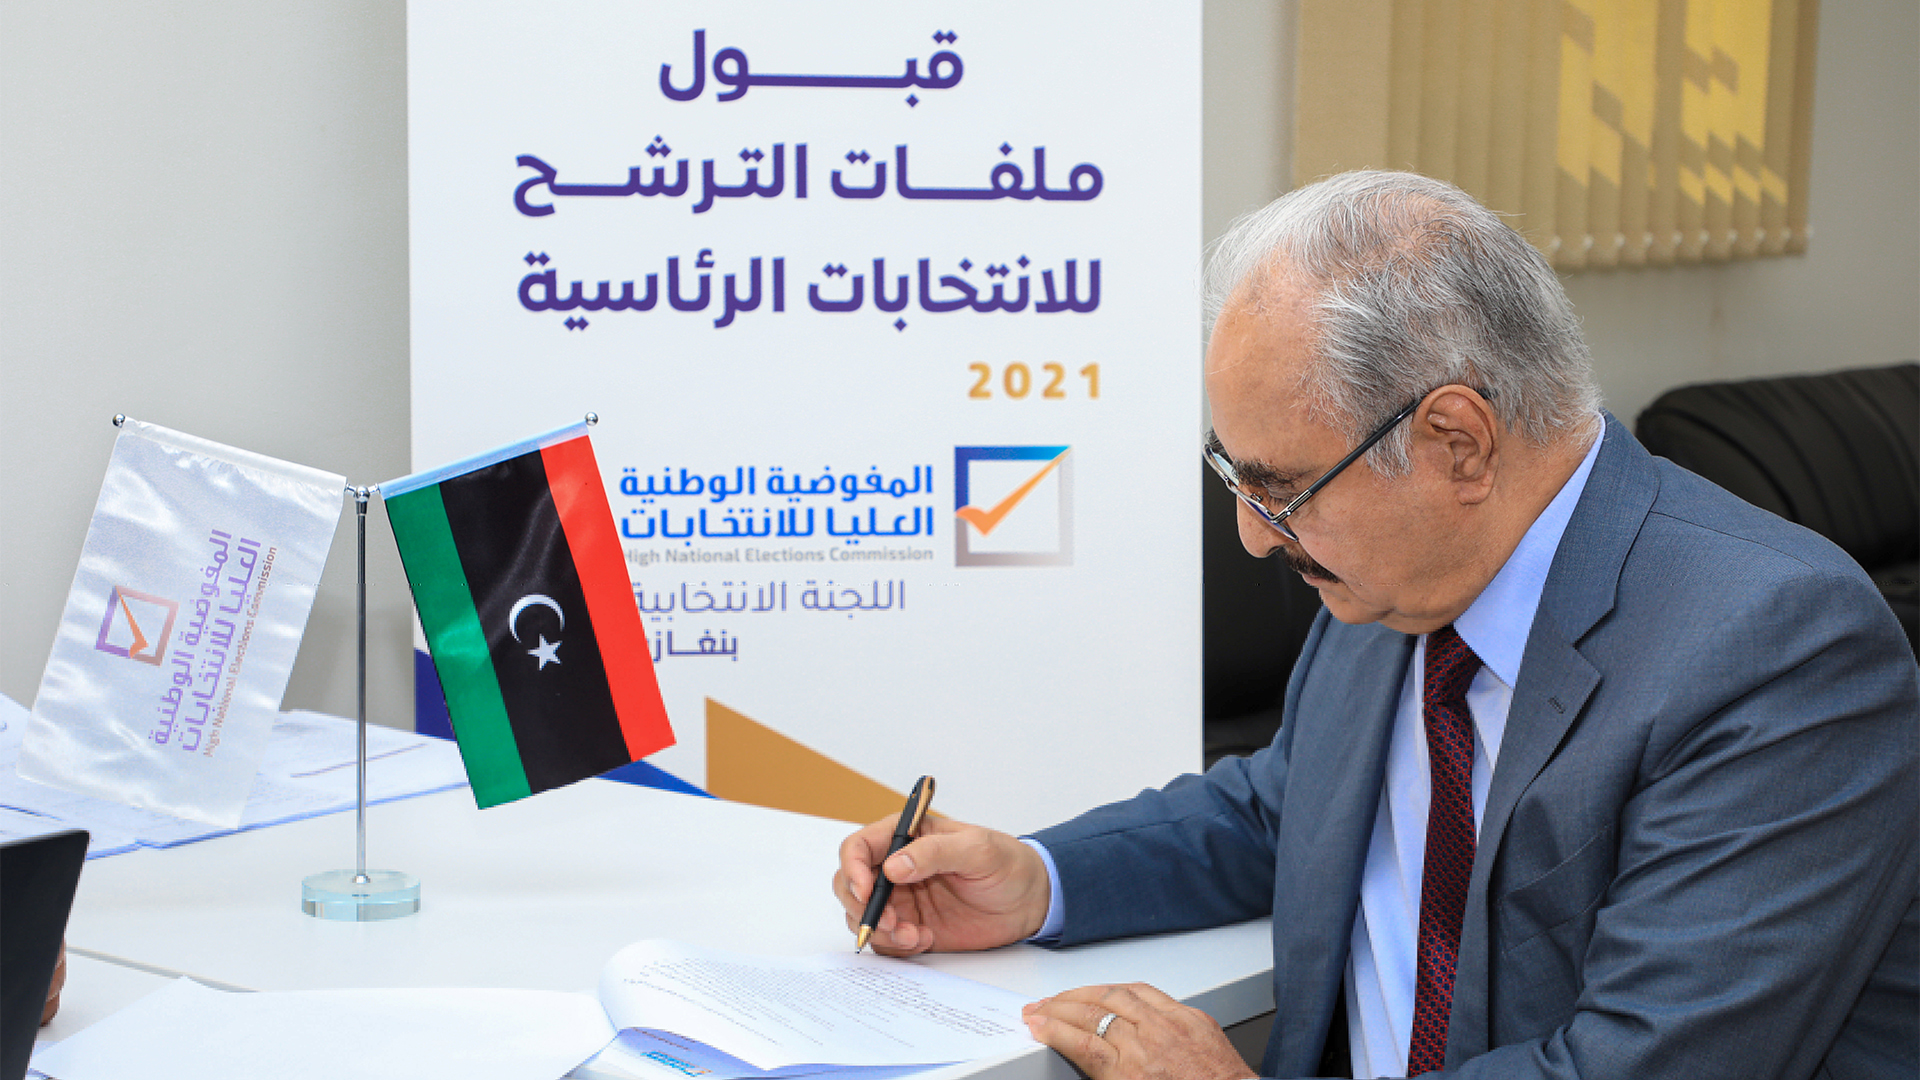 المفوضية العليا تقترح تأجيل الانتخابات الليبية